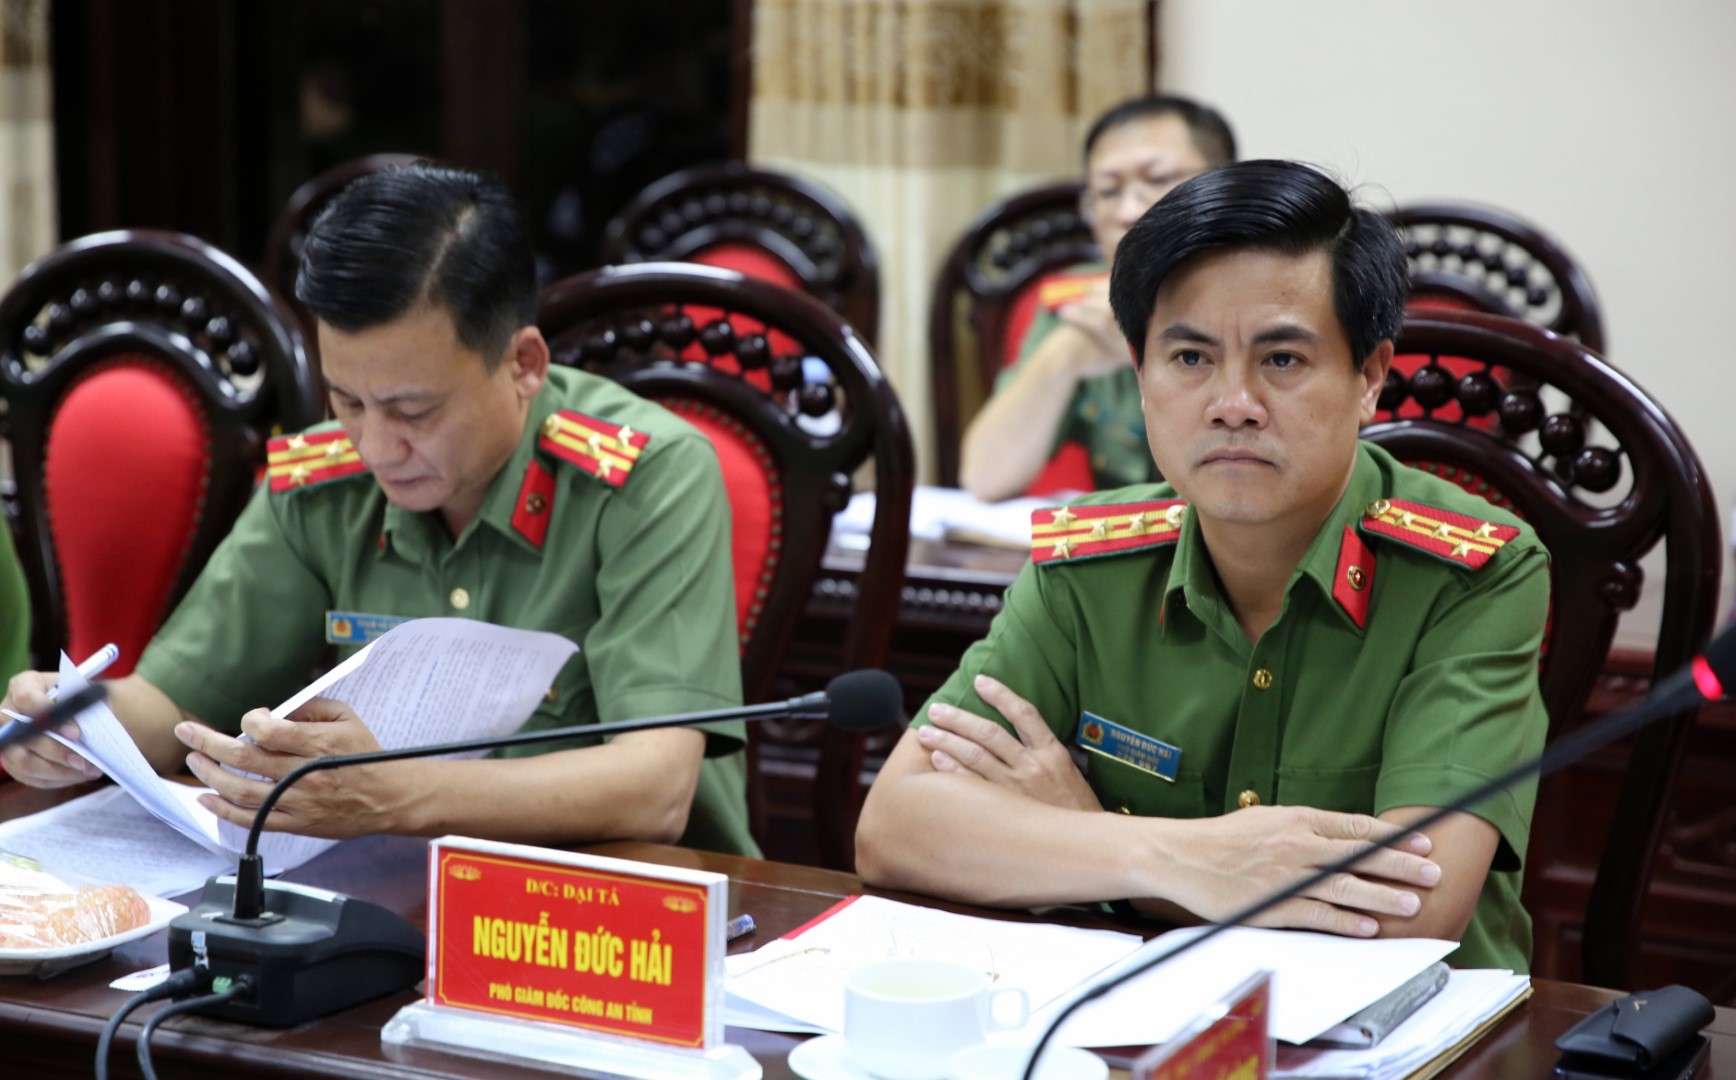 Đồng chí Đại tá Nguyễn Đức Hải – Phó Giám đốc Công an tỉnh Nghệ An và đại diện một số phòng nghiệp vụ tham dự buổi kết luận